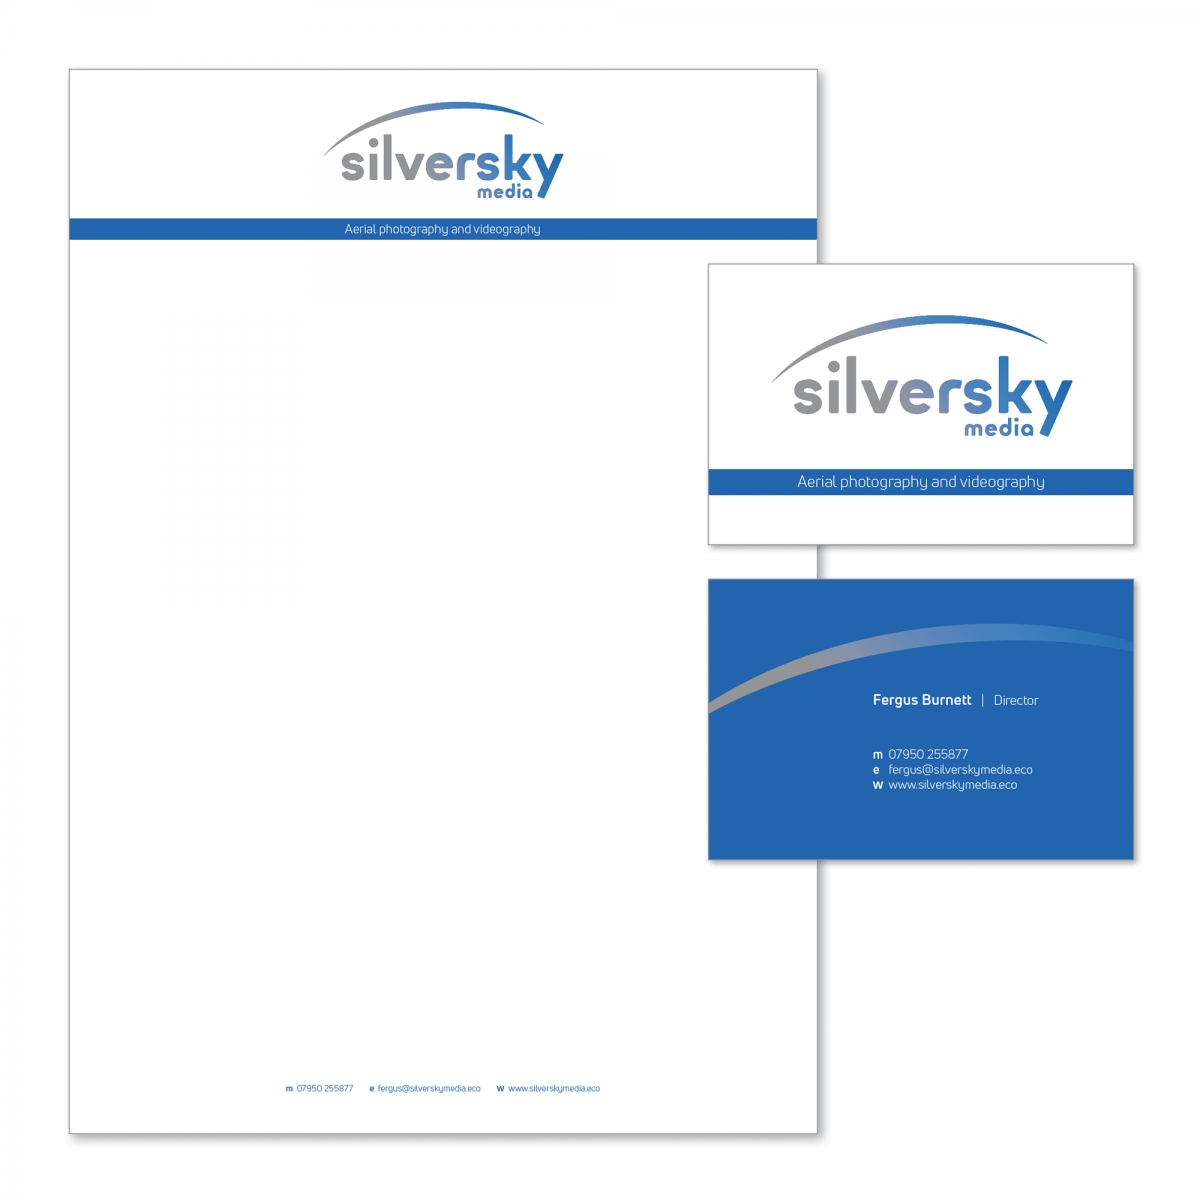 Silversky Media